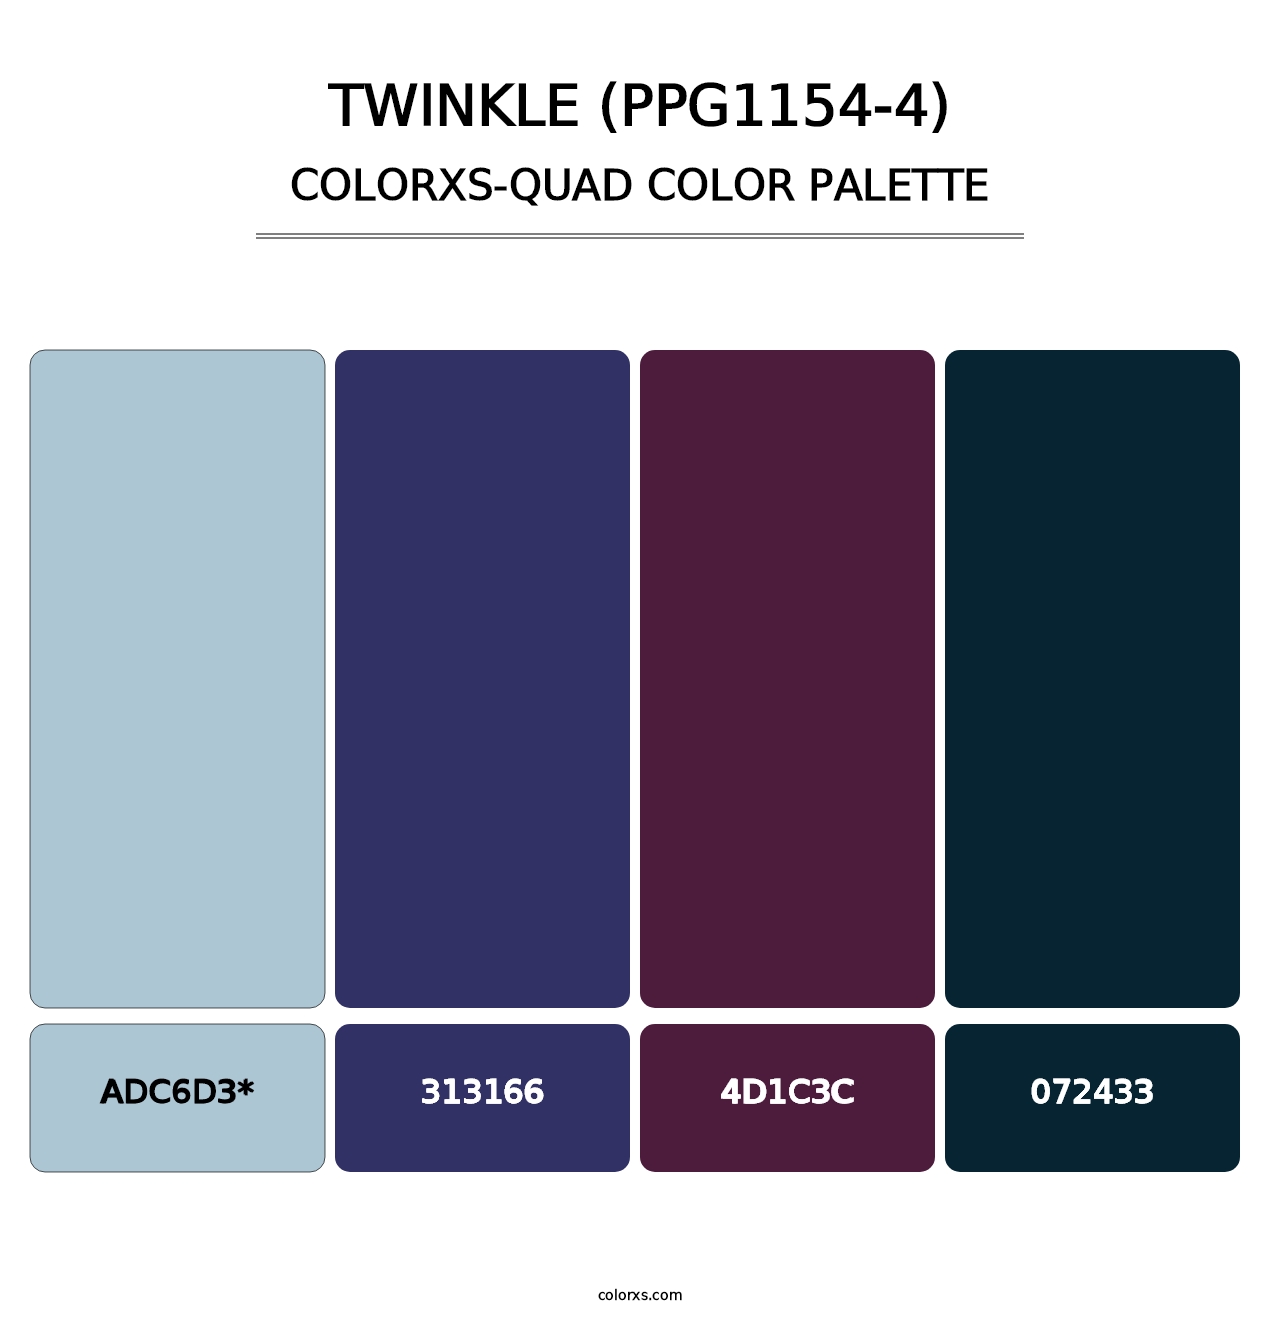 Twinkle (PPG1154-4) - Colorxs Quad Palette